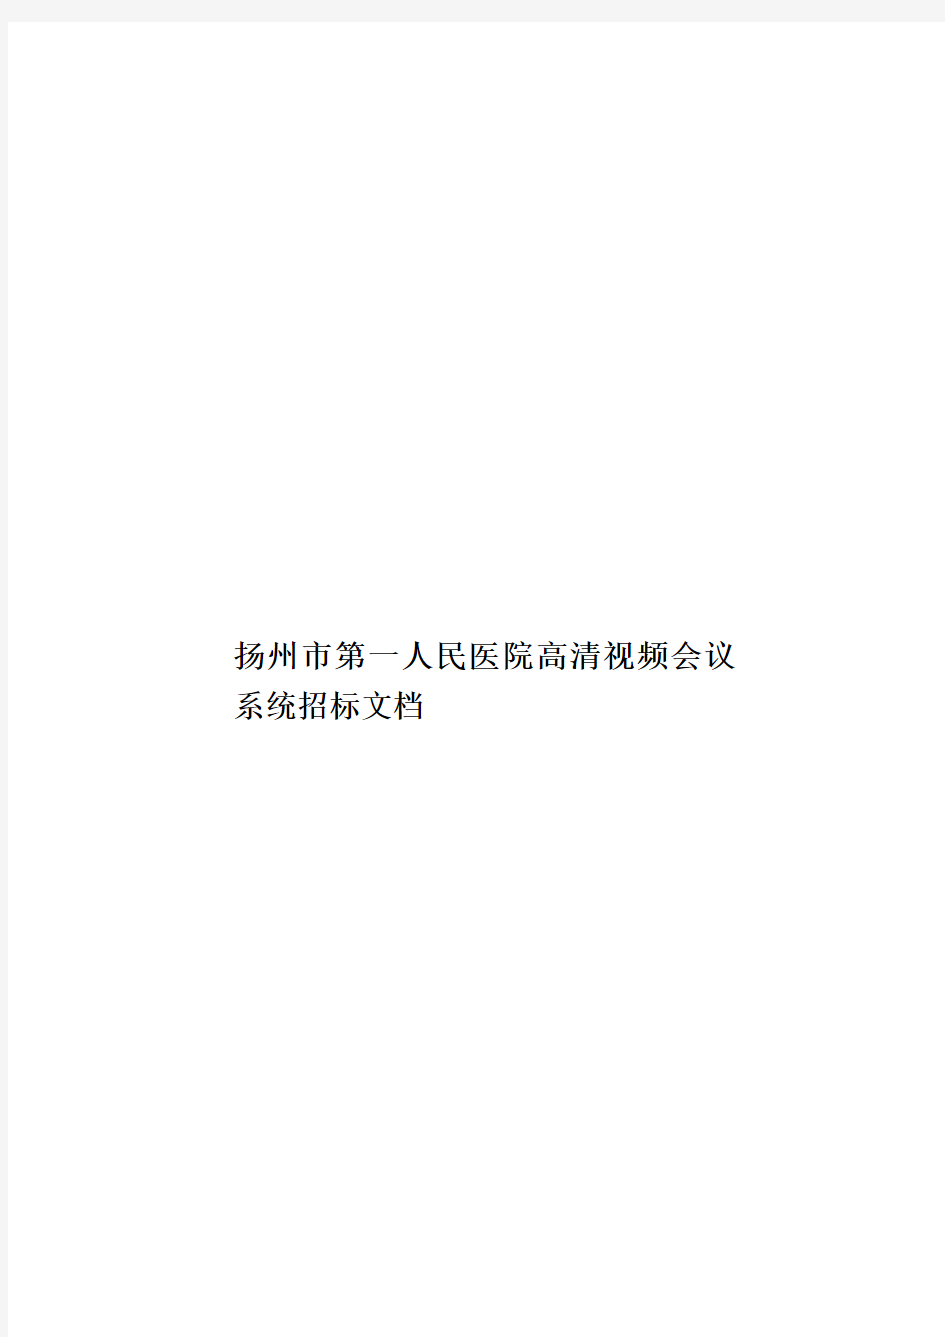 扬州市第一人民医院高清视频会议系统招标文档样本